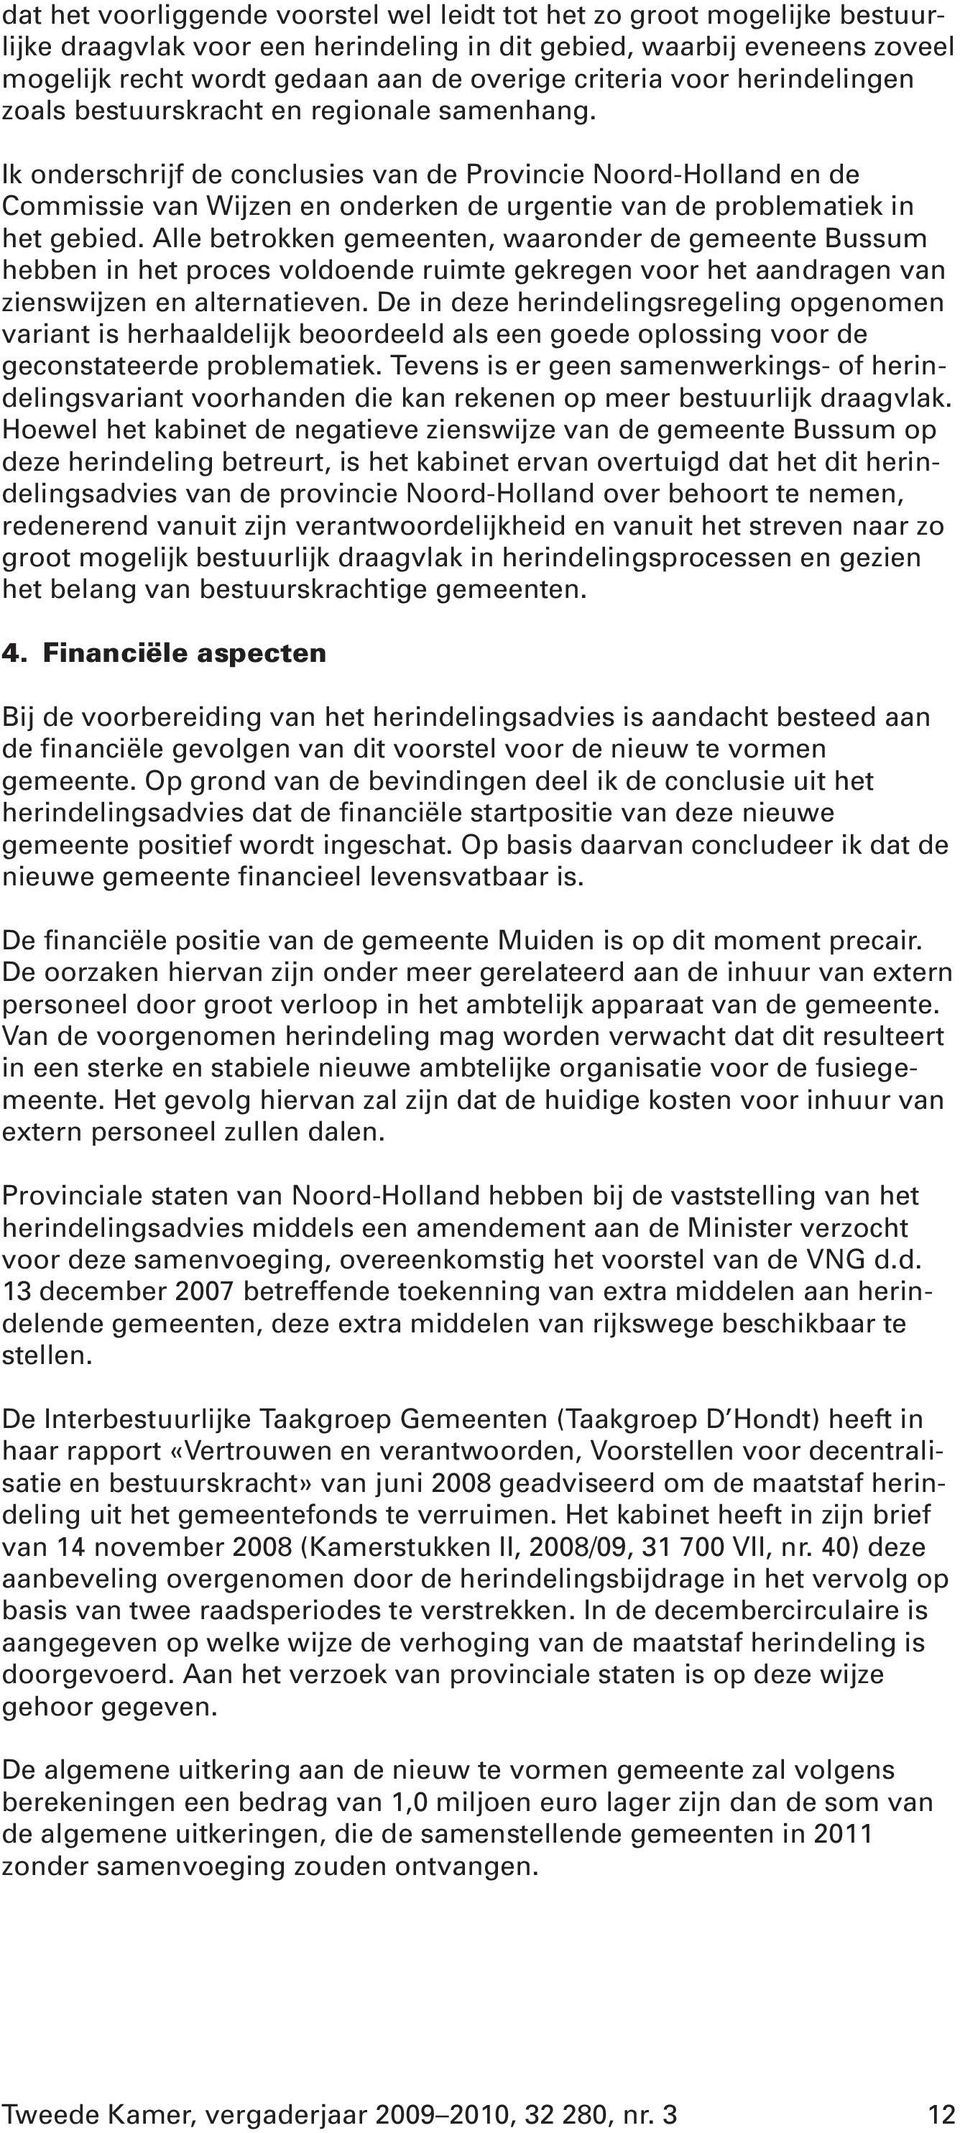 Ik onderschrijf de conclusies van de Provincie Noord-Holland en de Commissie van Wijzen en onderken de urgentie van de problematiek in het gebied.